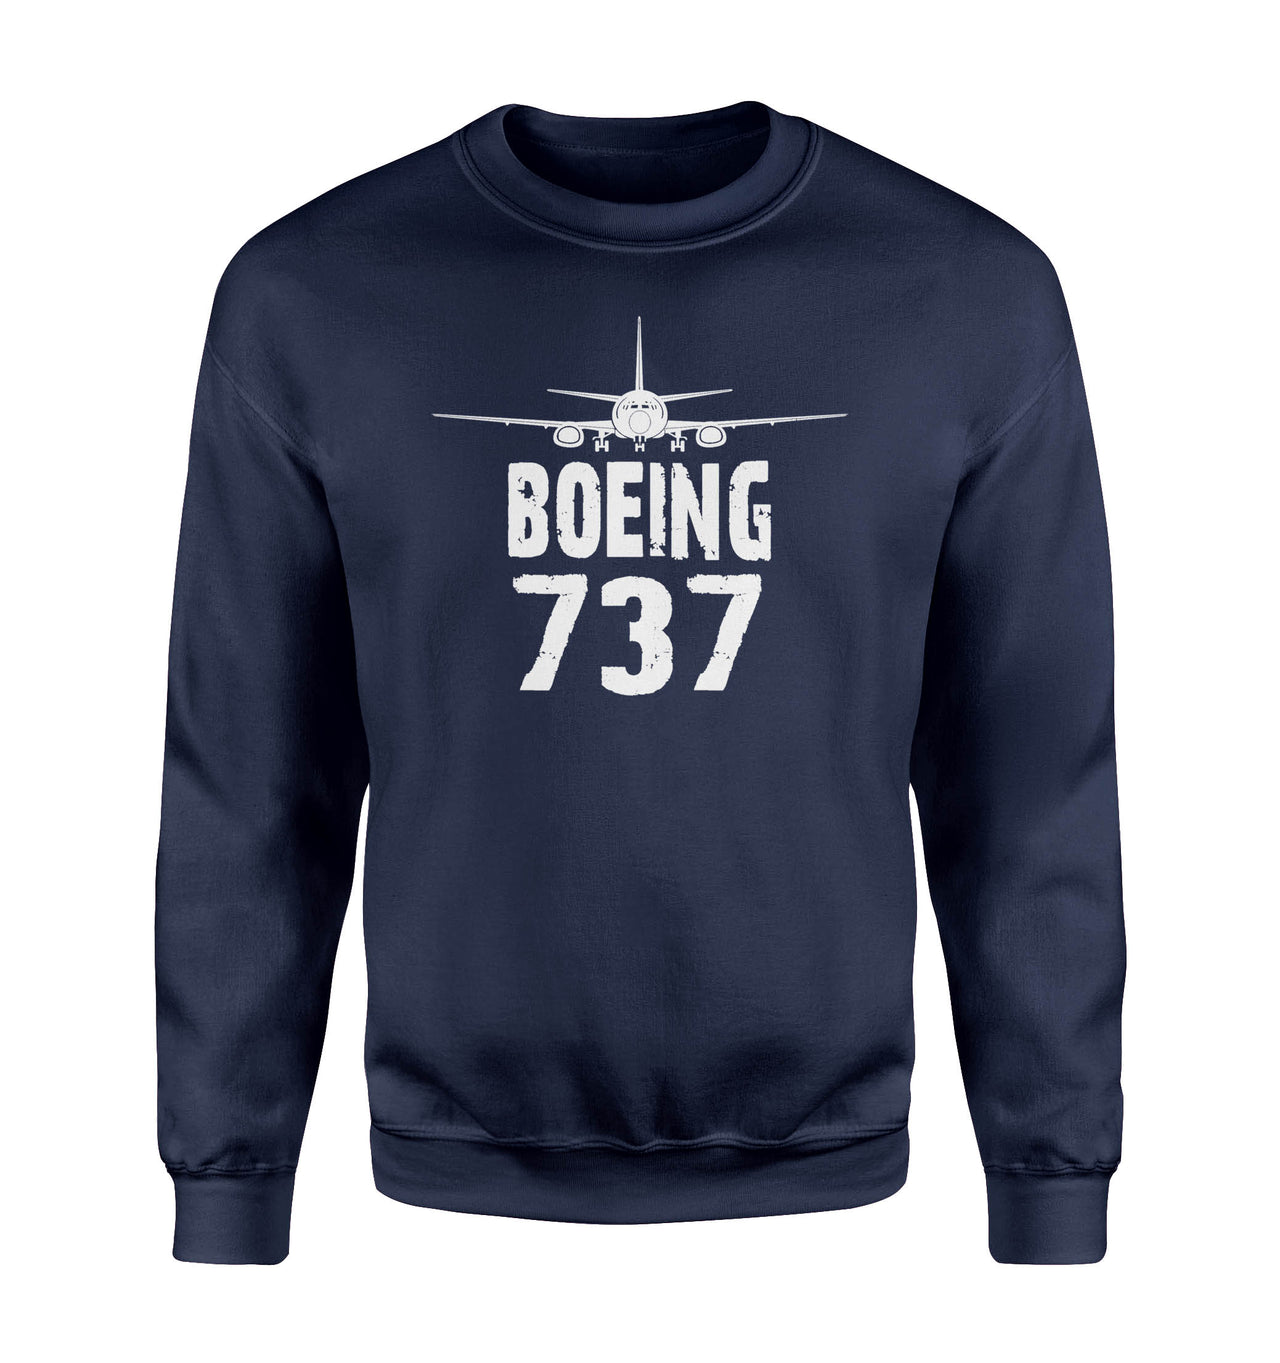 Boeing 737 & Plane Designed Sweatshirts